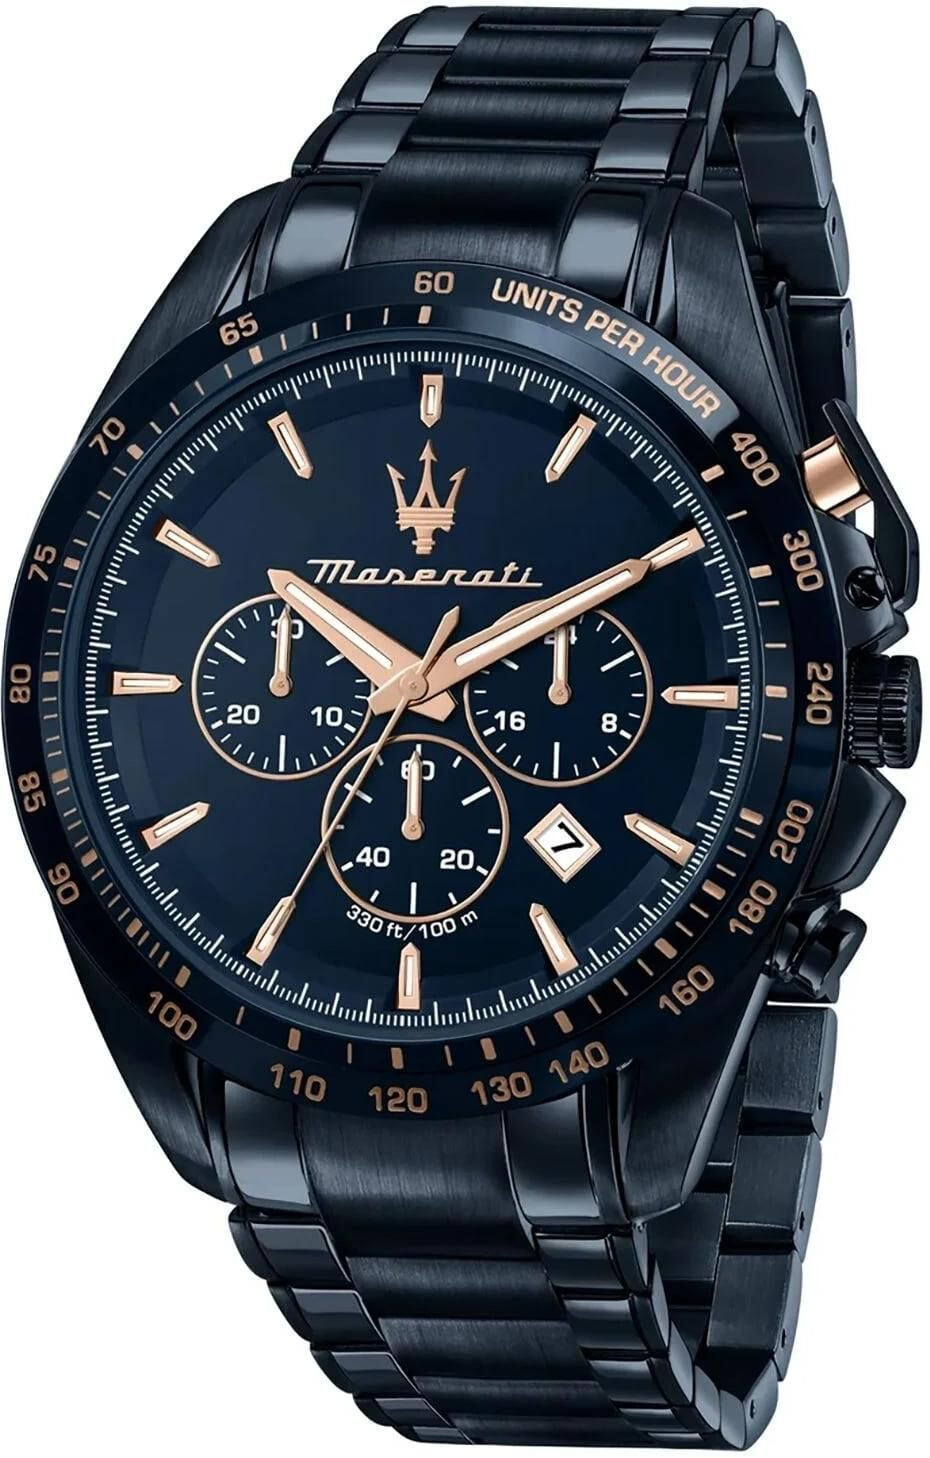 € 246,00 - Quarz Preisvergleich Armbanduhr R8873612054 | - ab - Maserati Blue Edition bei Traguardo